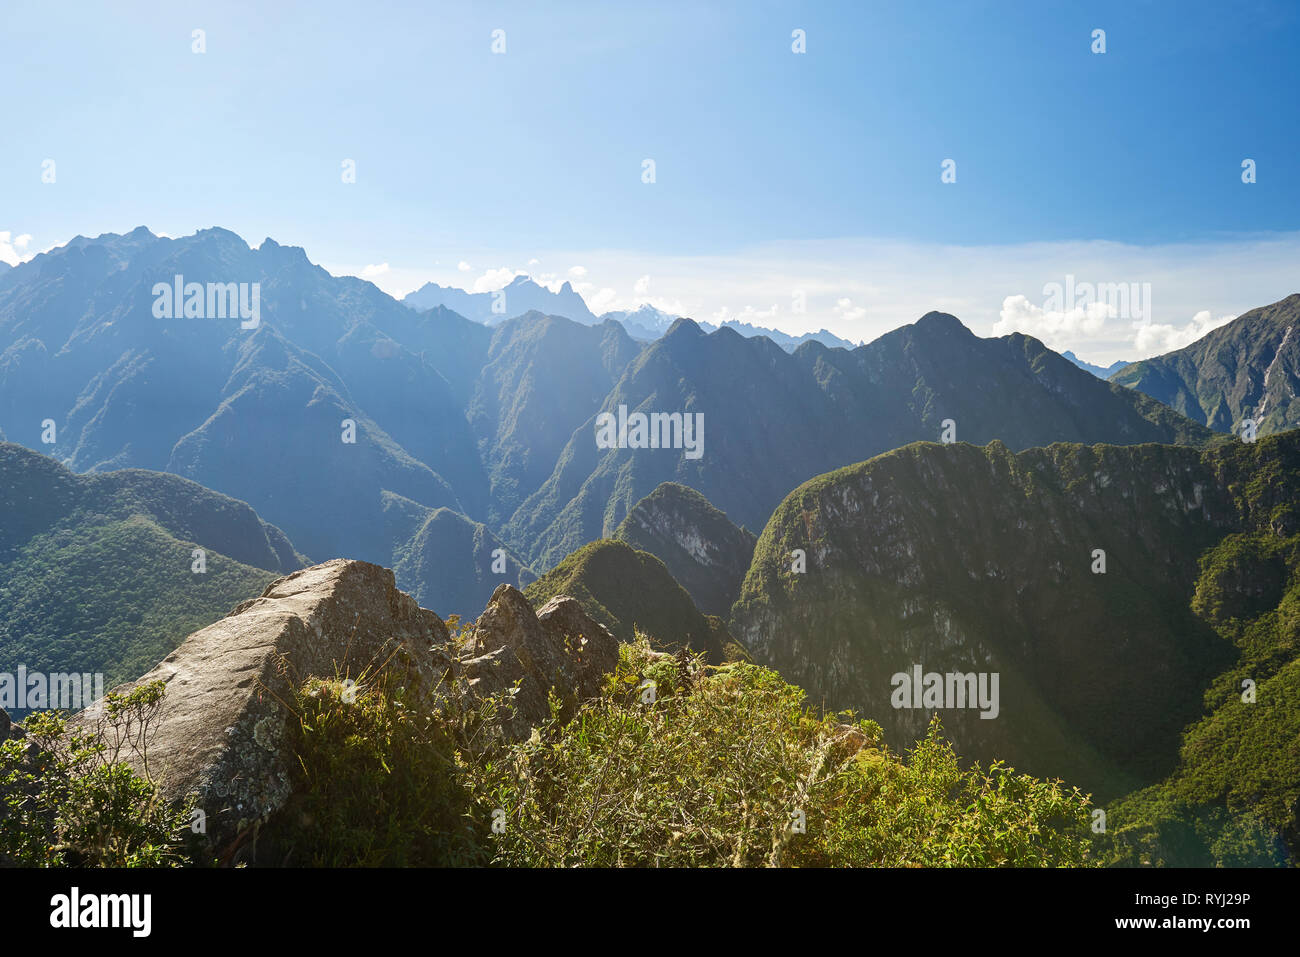 Narrow path on top of mountain. Hiking travel theme Stock Photo